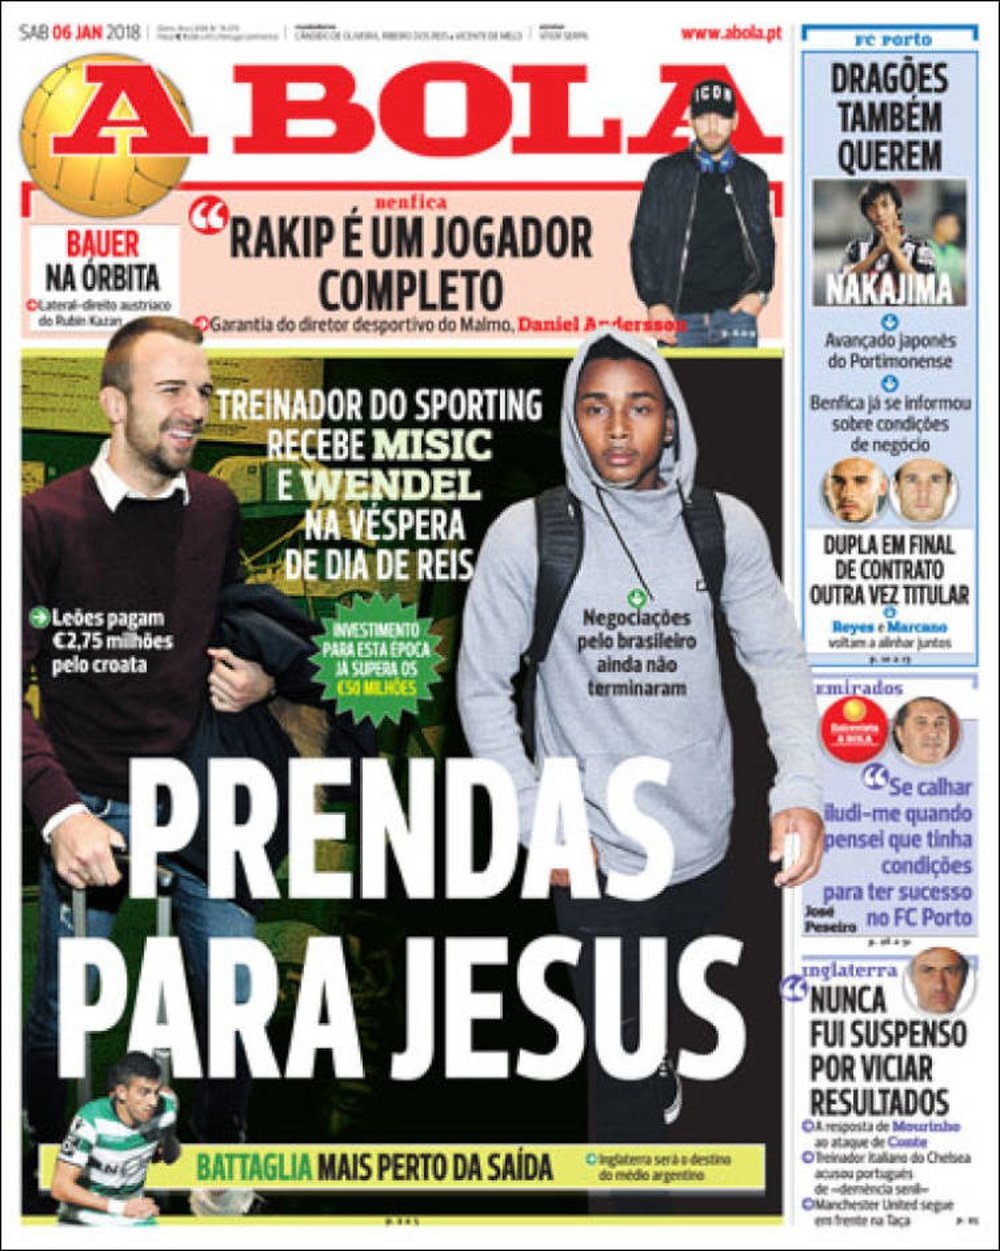 A capa do jornal A Bola, 06/01/18. A Bola